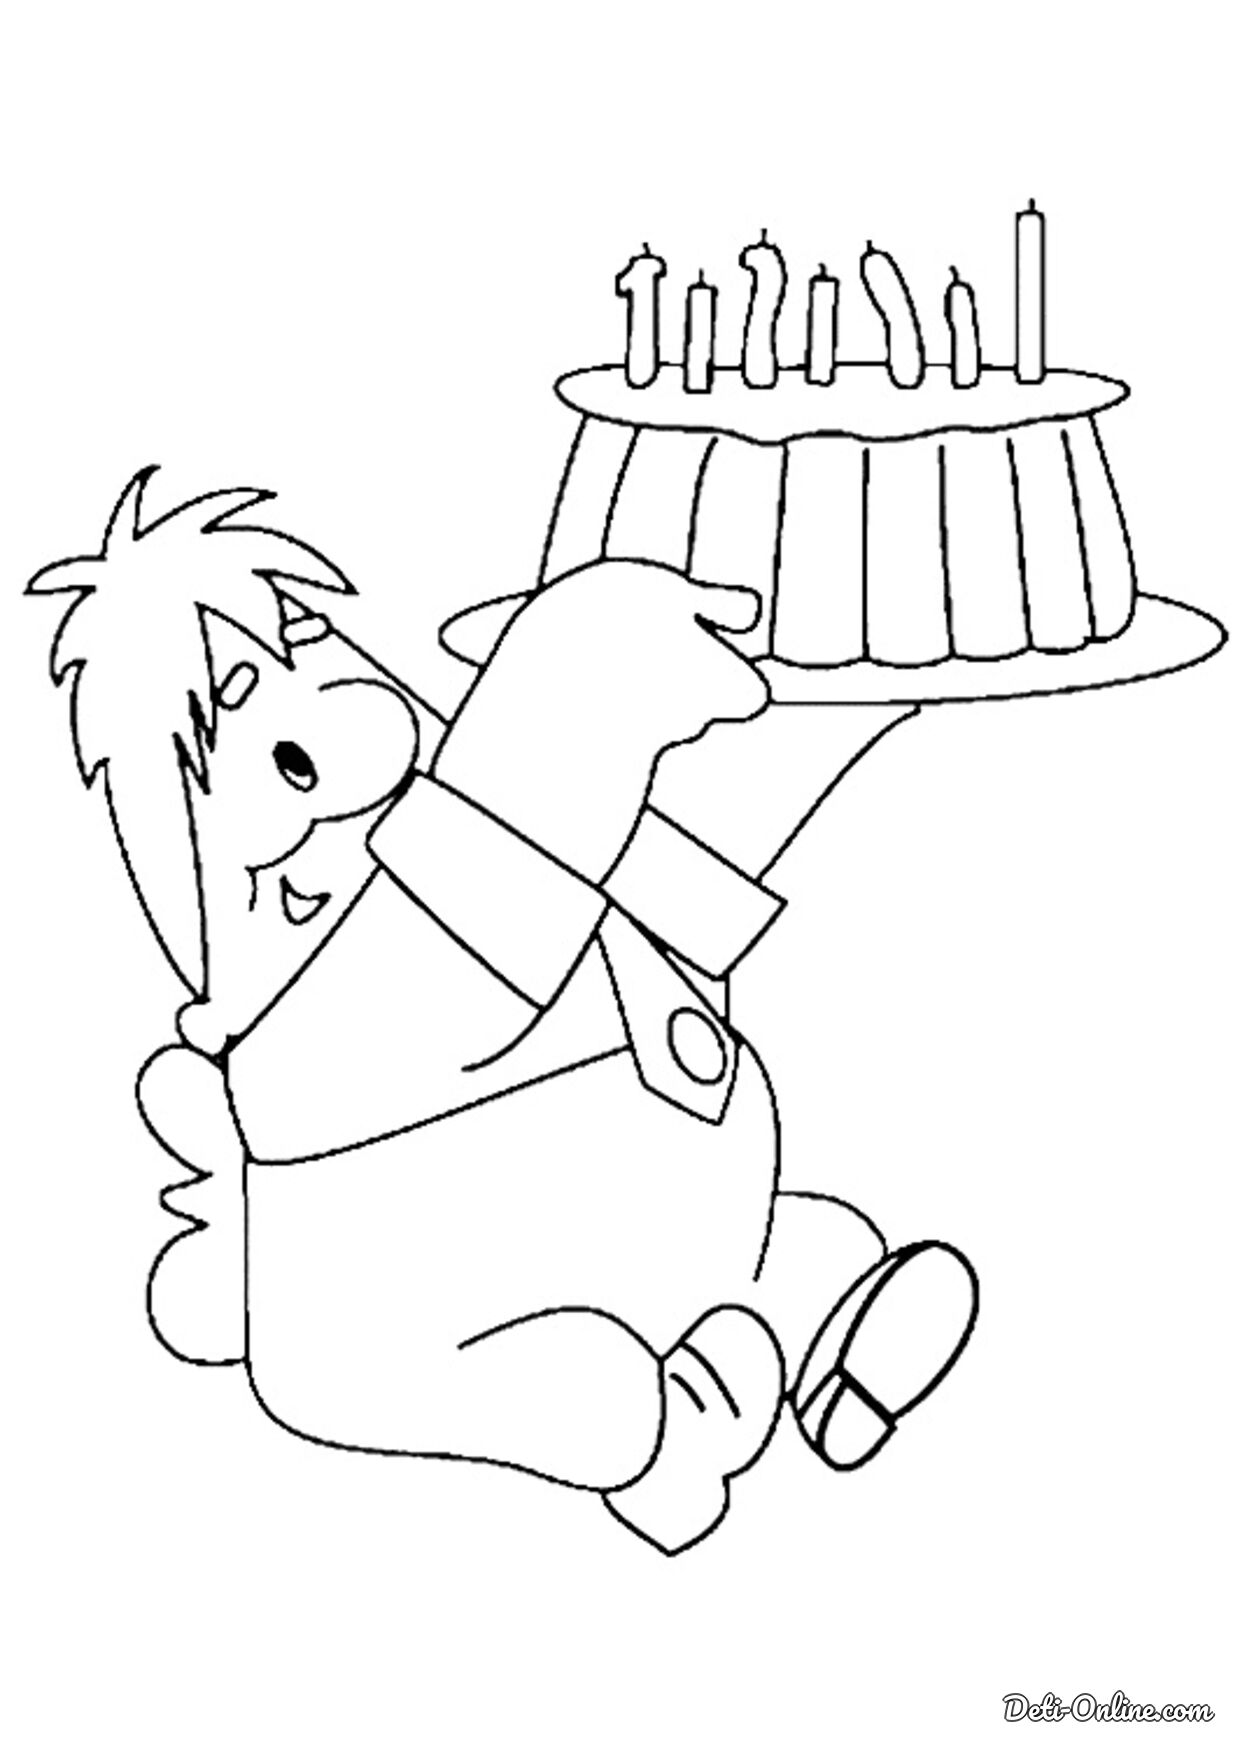 Рисовать рисунки на день рождения. Раскраска "с днем рождения!". Карлсон раскраска. С днем рождения раскраска для детей. С днём рождения рисунок карандашом.